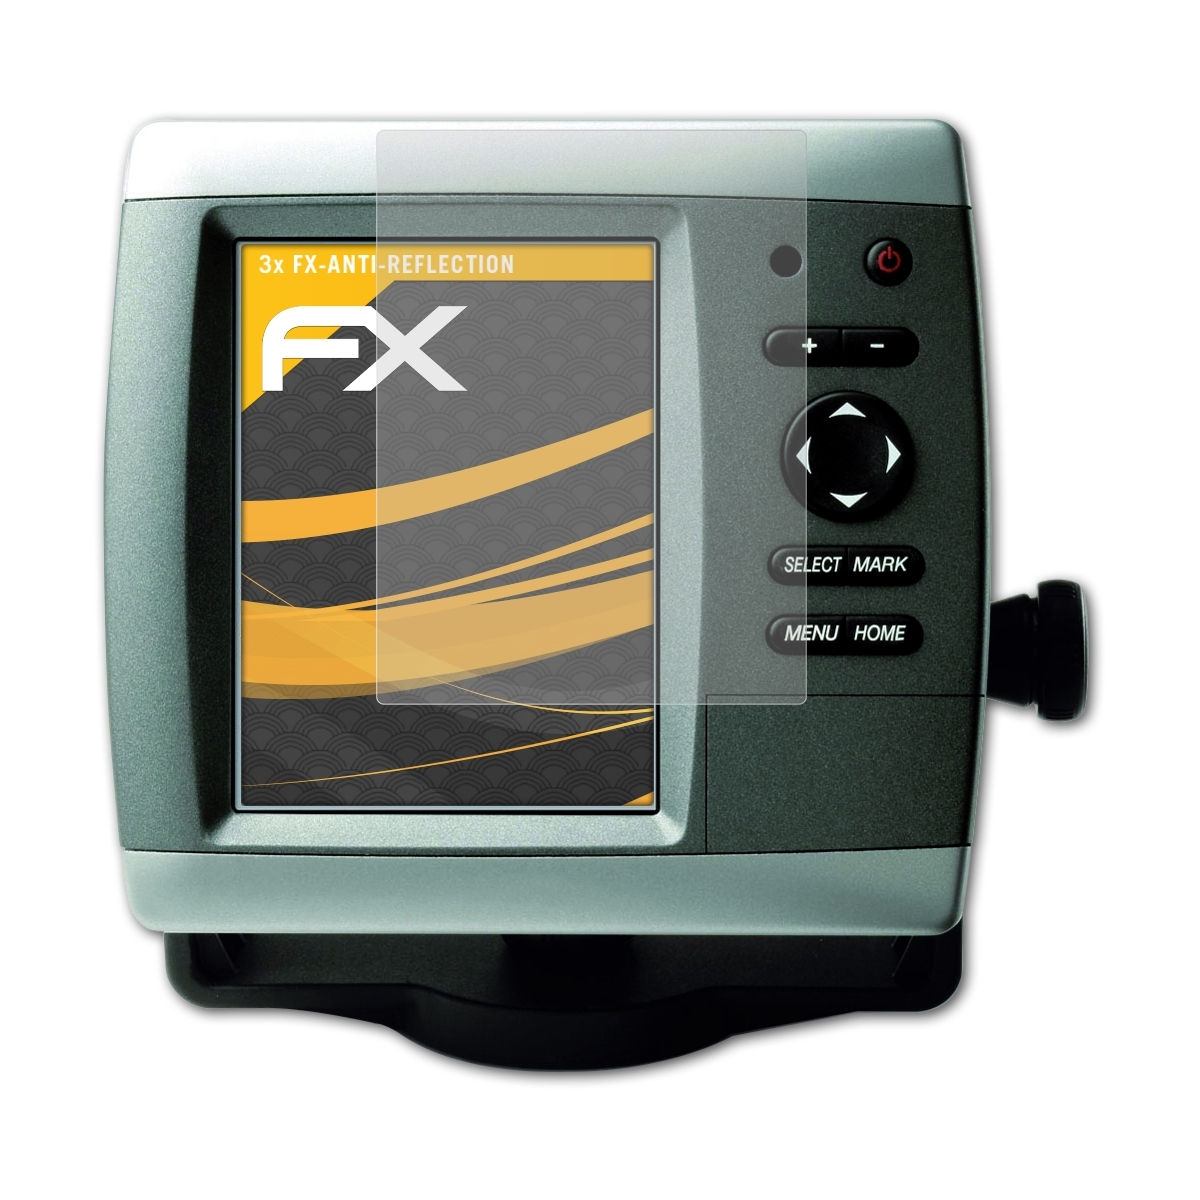 3x Displayschutz(für ATFOLIX FX-Antireflex Garmin 520s) GPSMap